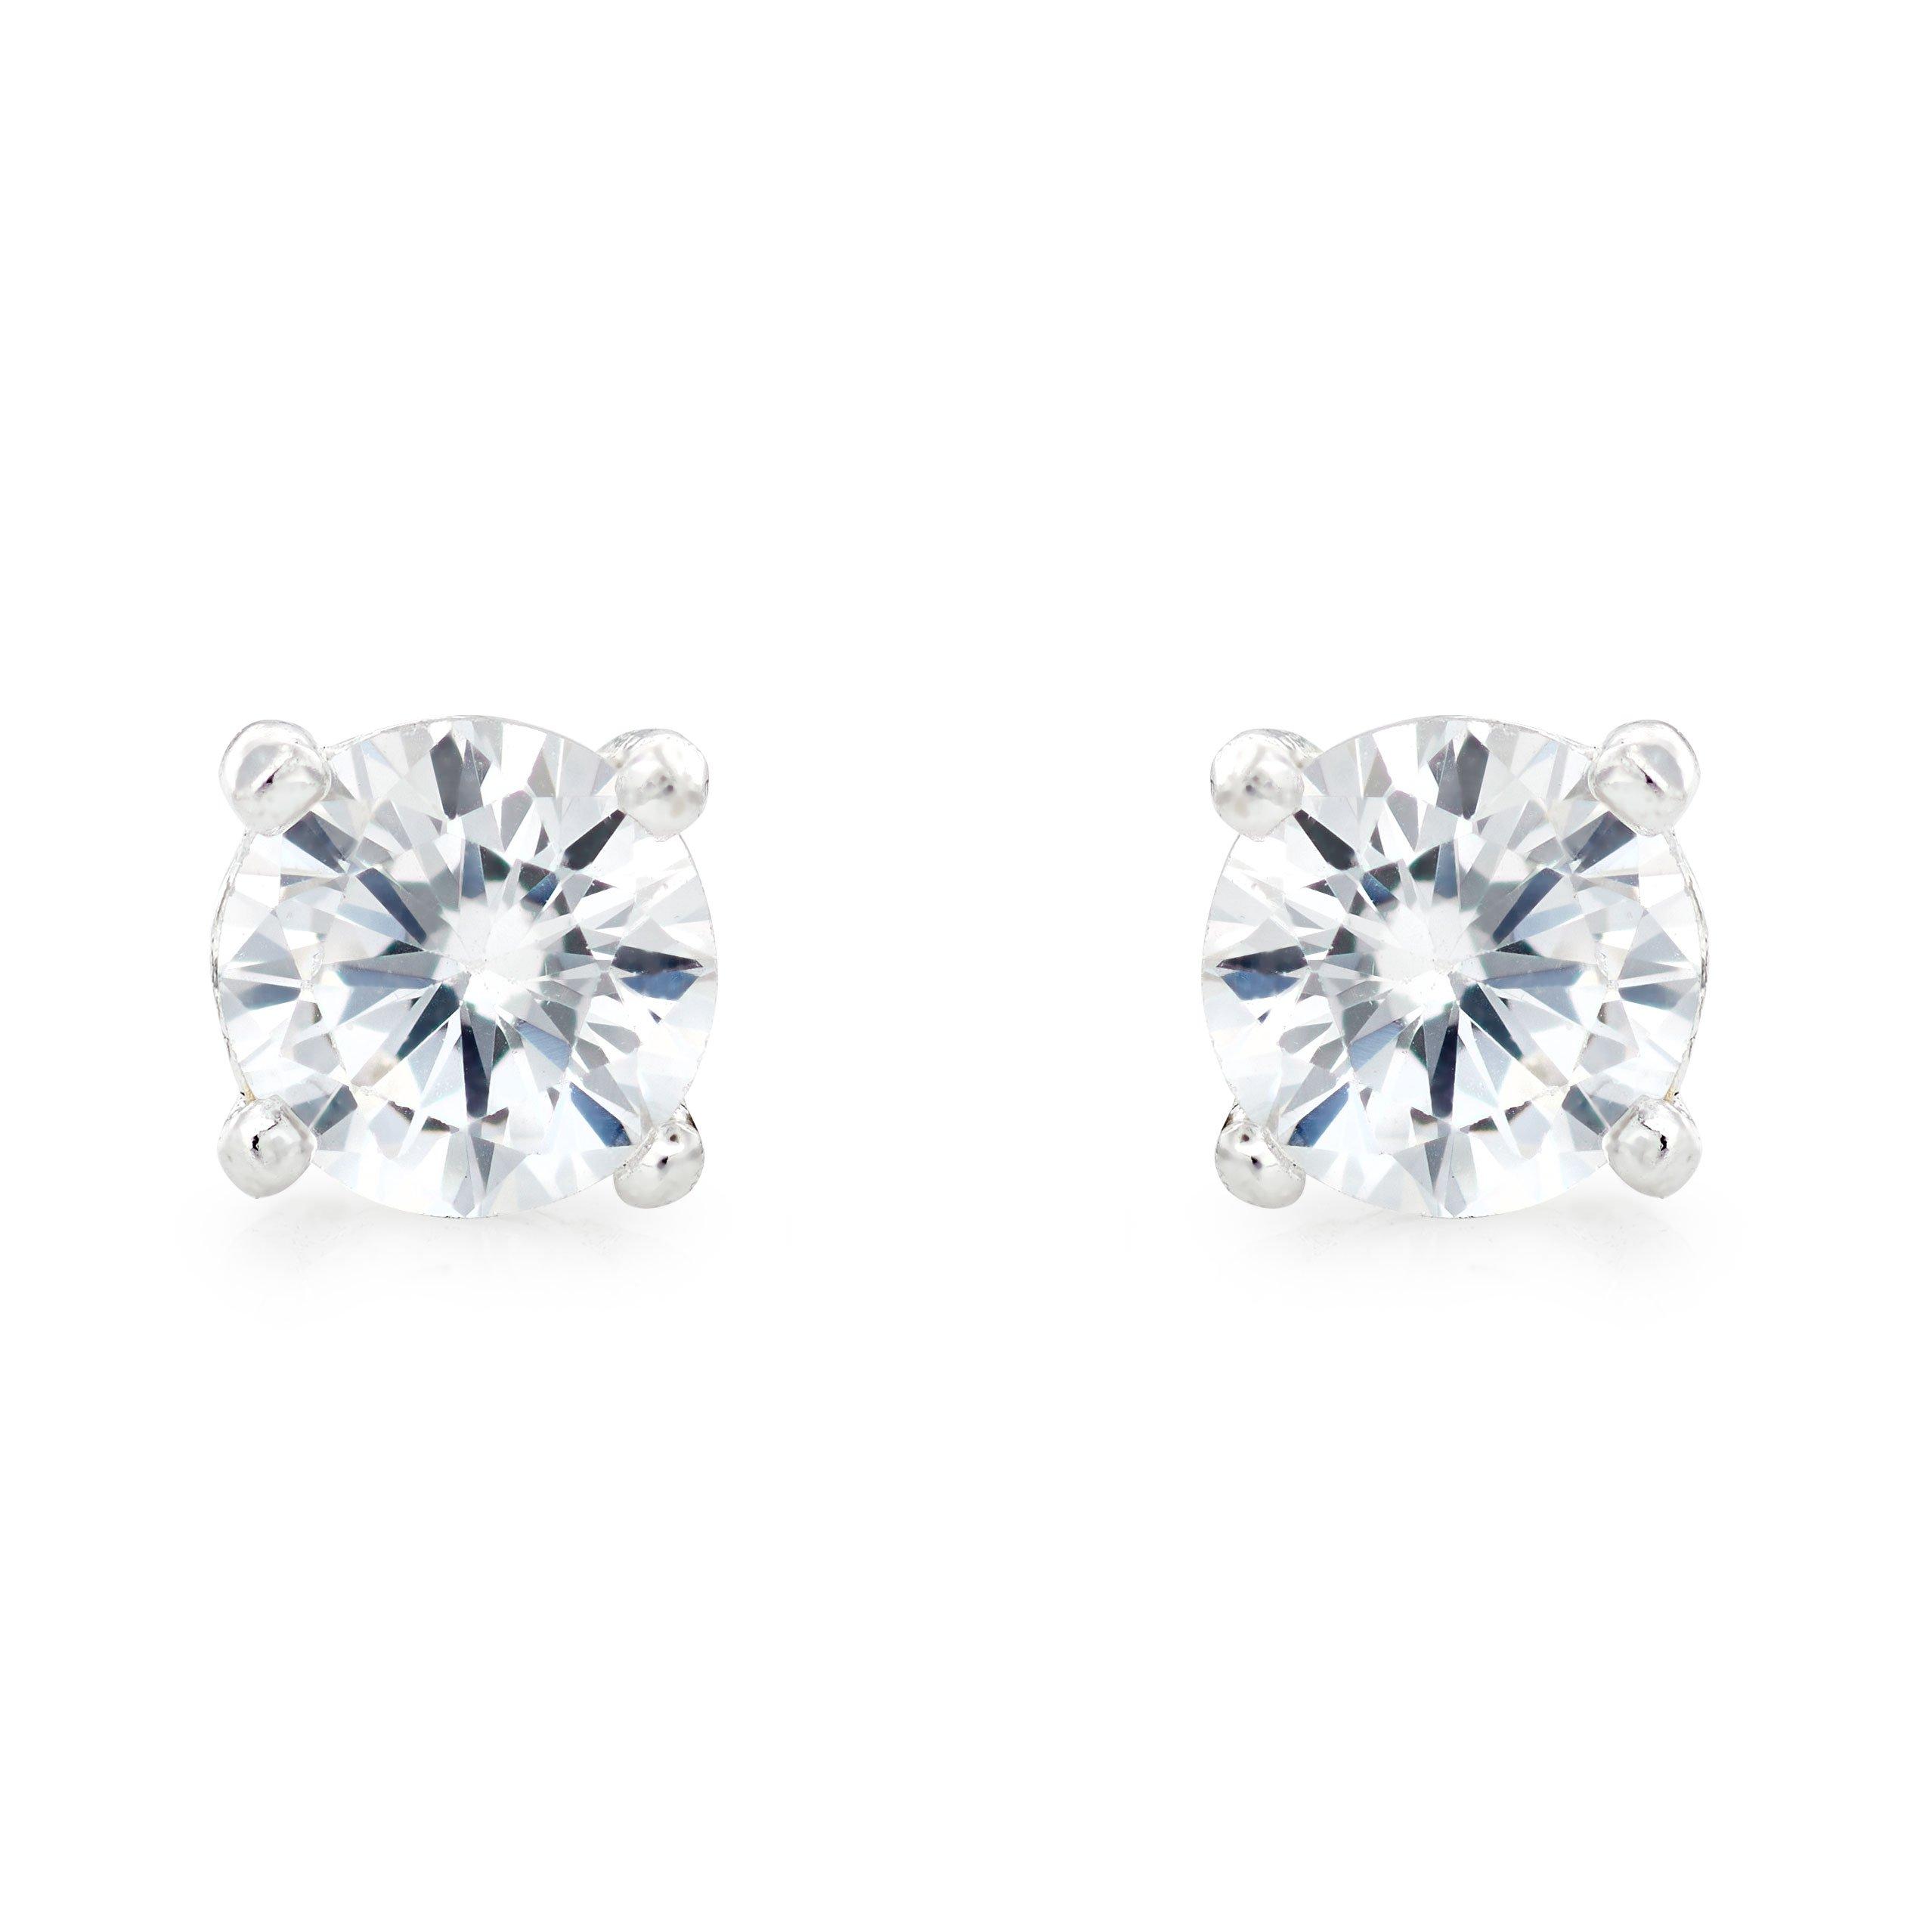 Silver Cubic Zirconia Fancy Cut Earrings Set | 0134405 | Beaverbrooks ...